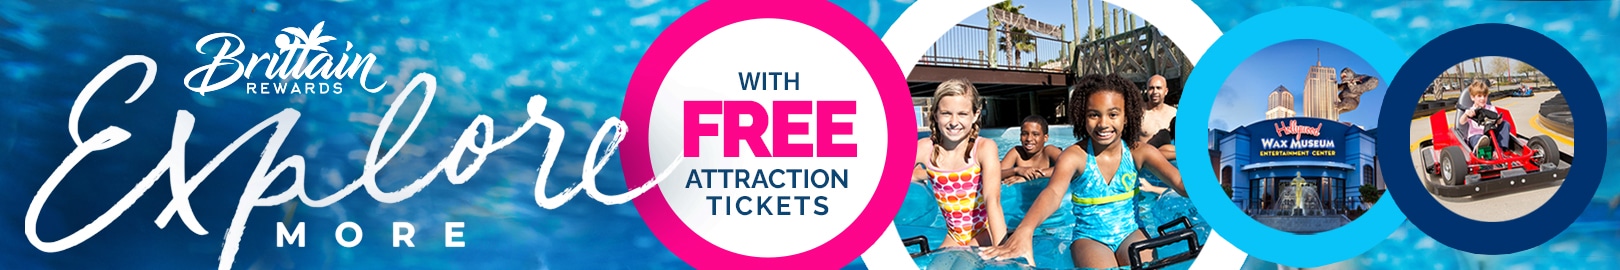 Brittain Rewards - Explore with Free Attraction Tickets